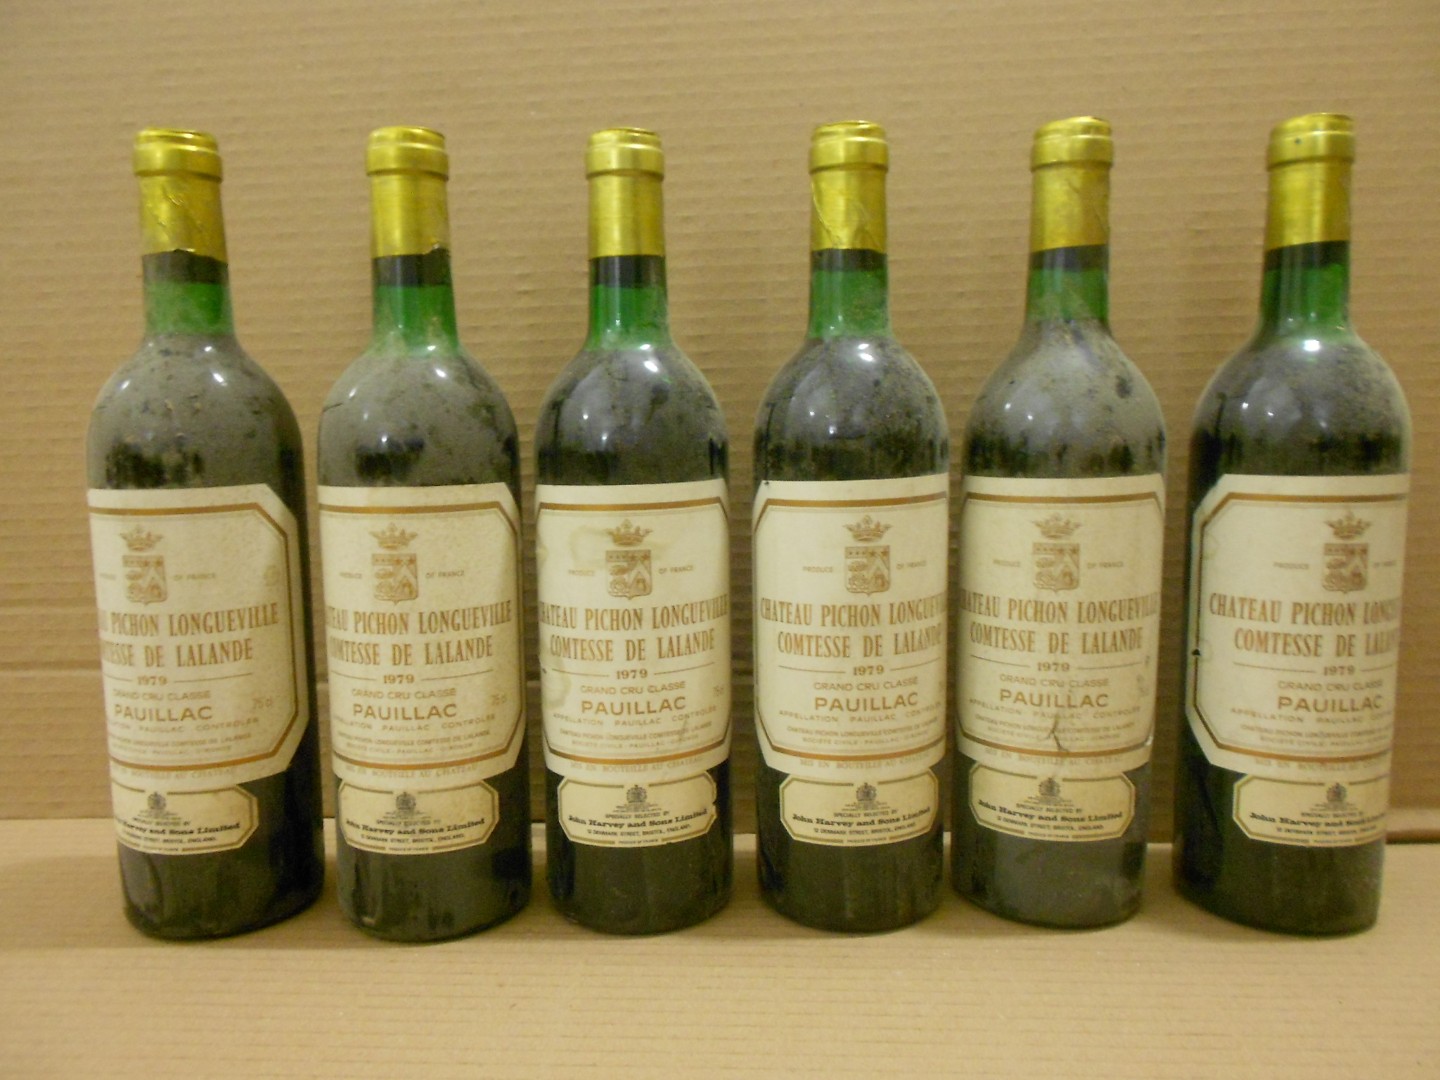 Chateau Pichon Longueville, Comtesse de Lalande, Pauillac 2eme Cru 1979, twelve bottles. Removed